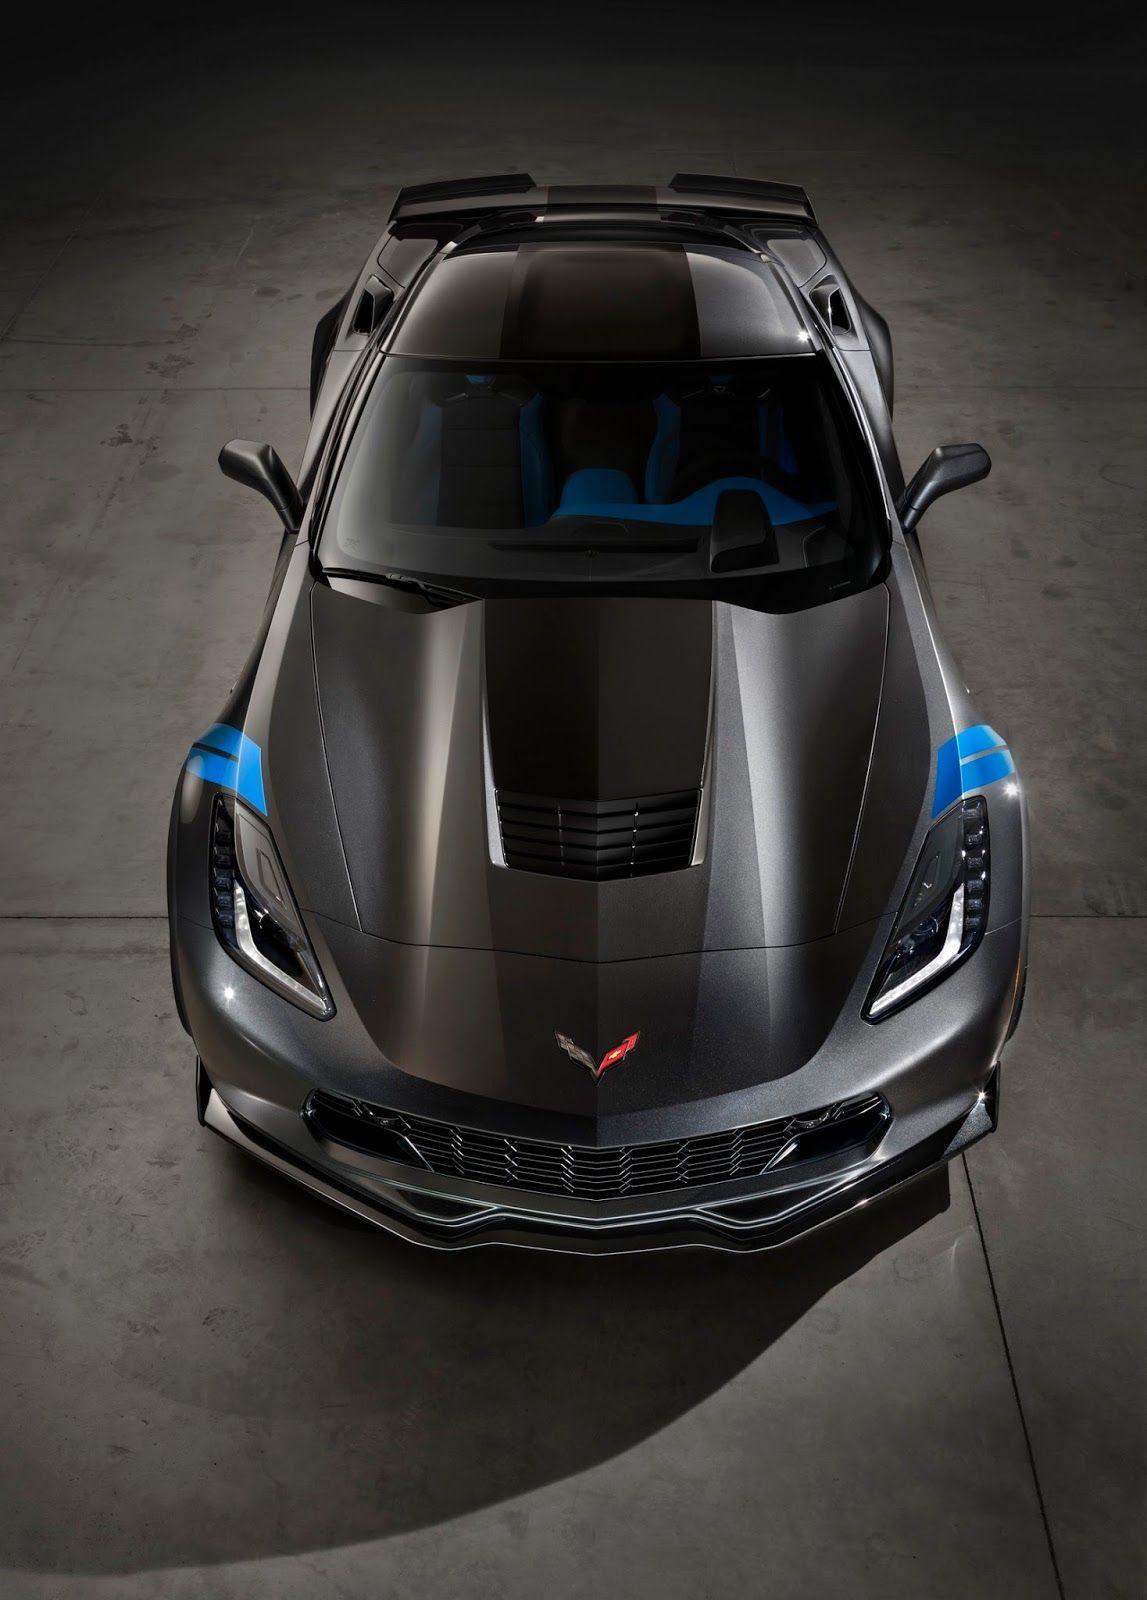 image about Cars. Corvettes, Chevrolet